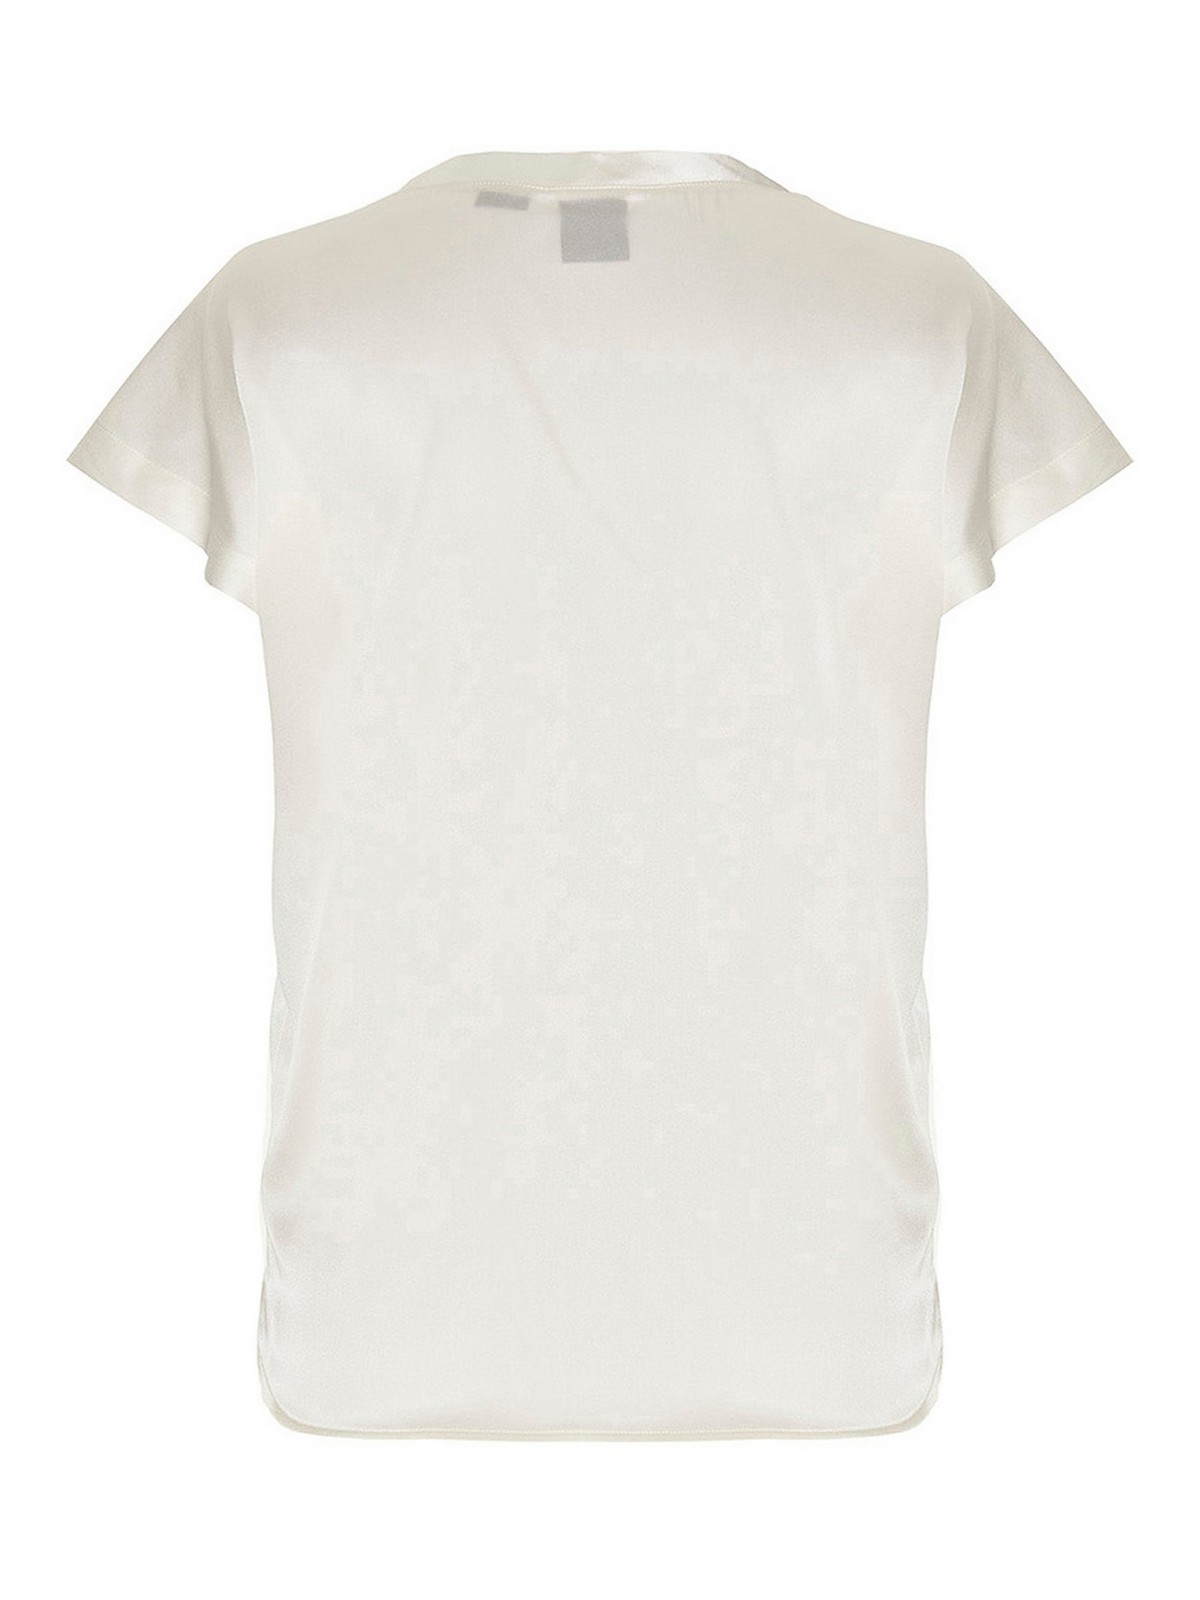 PINKO round-neck ruffled blouse - White